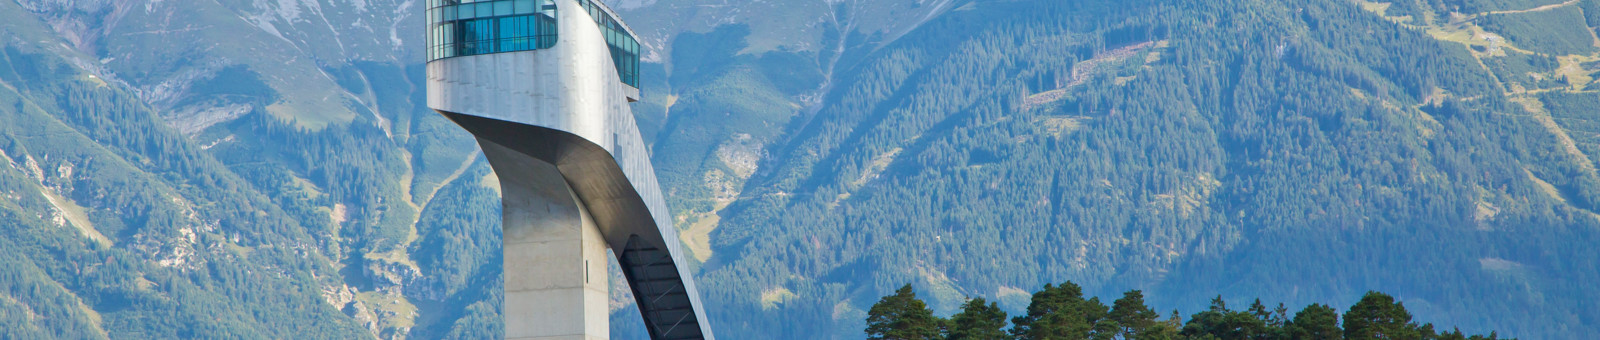     Bergisel ski jump with view to Karwendel mountains / Bergisel, Innsbruck